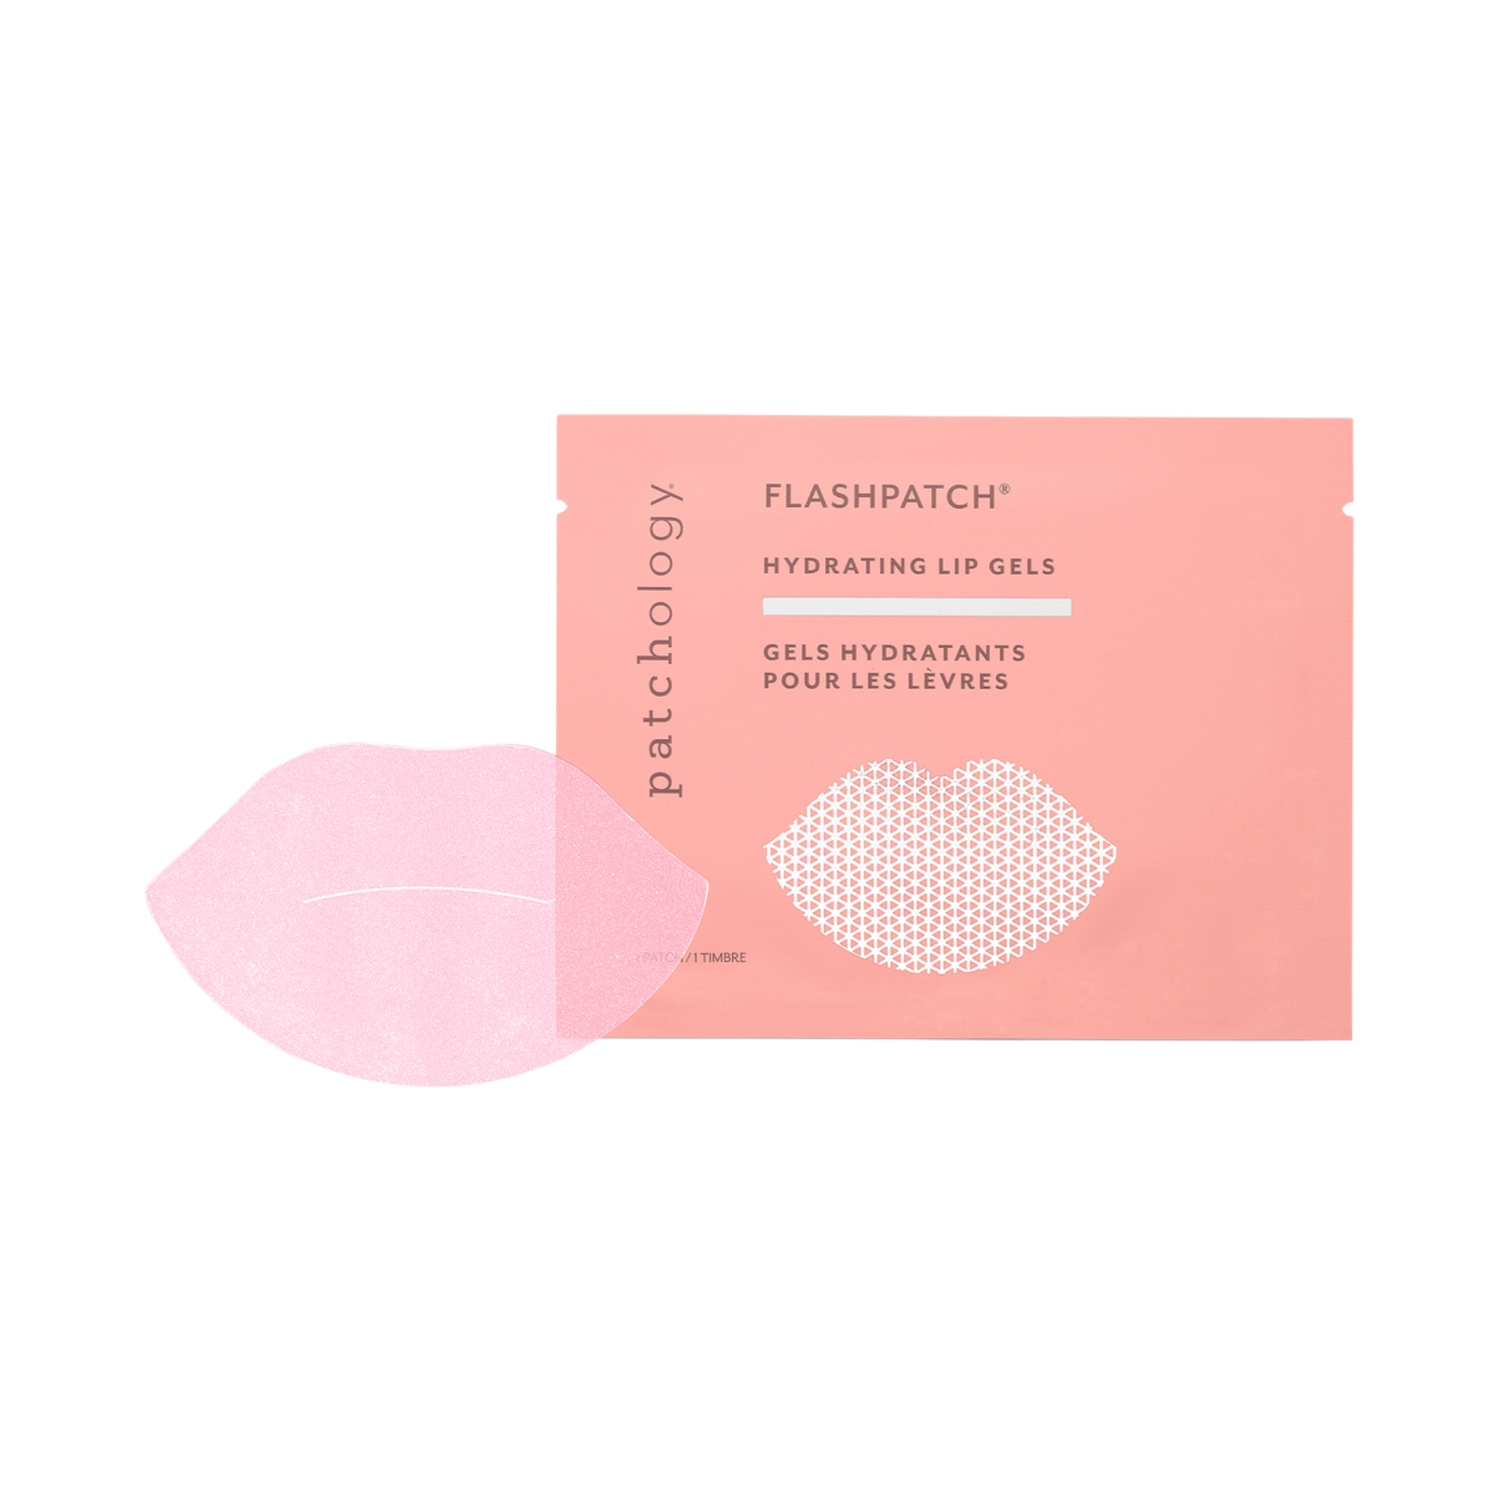 Patchology | Patchology Flashpatch Hydrating Lip Gels Mask